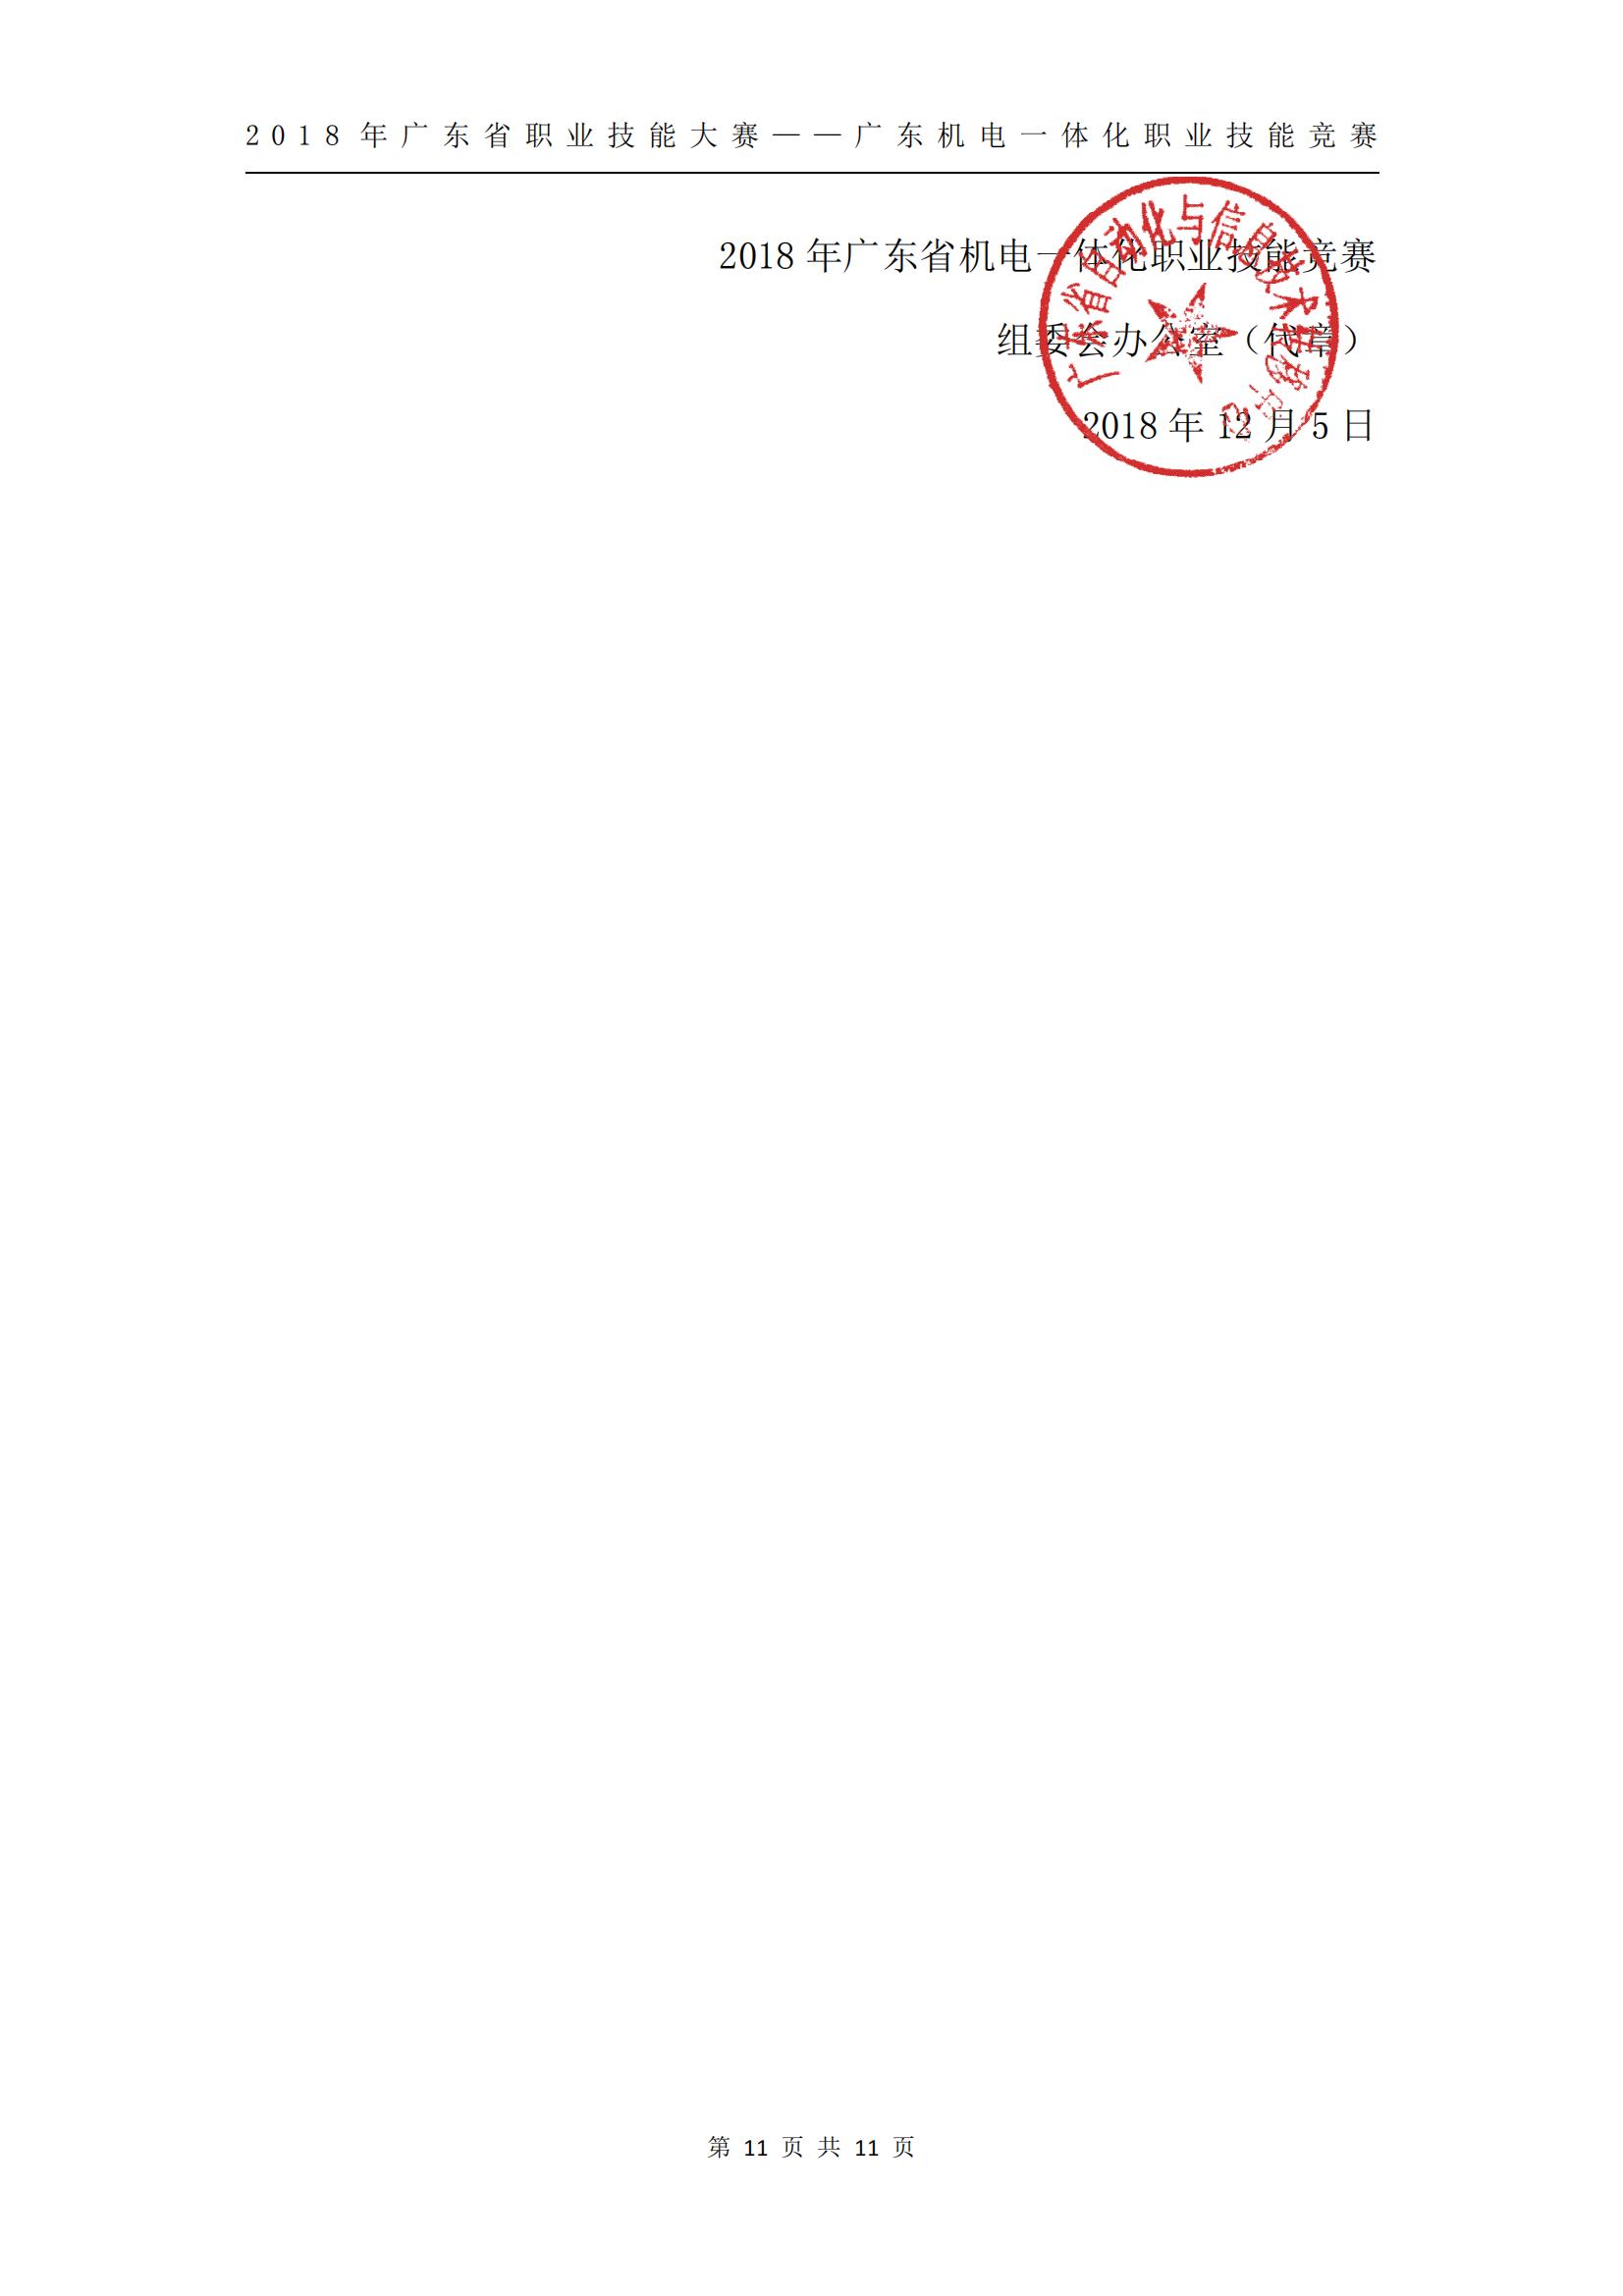 2018 年广东省职业技能大赛——广东机电一体化职业技能竞赛获奖人员和单位公布_10.jpg